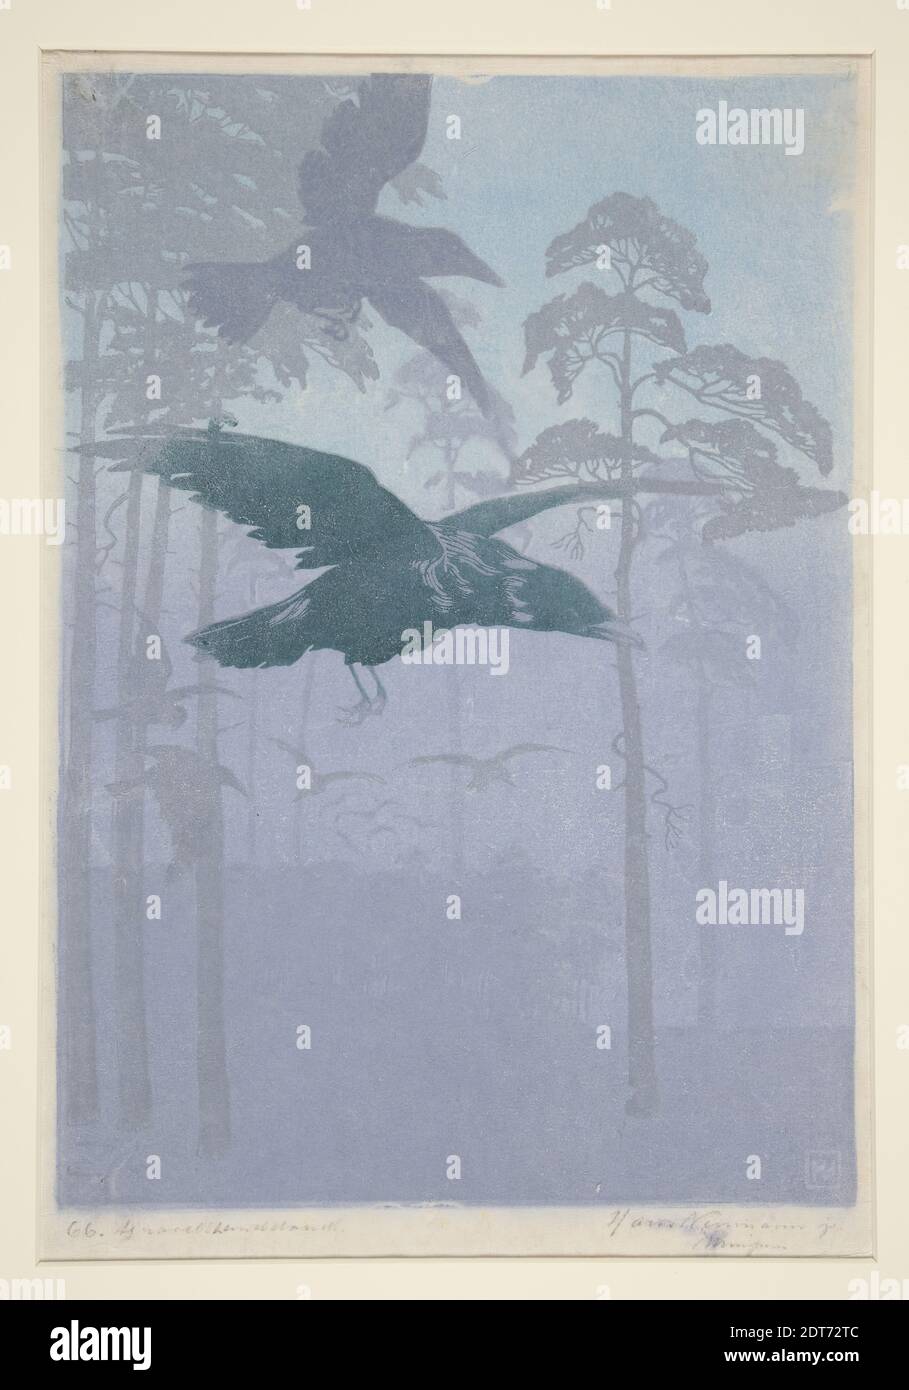 Artista: Hans Neumann, alemán, 1873–1957, Untitled (estudio de las aves en el bosque), Color madera en papel de Japón, Hoja: 37.2 × 25 cm (14 5/8 × 9 13/16 in.), hecho en Alemania, alemán, siglo 19, trabajos en papel - impresiones Foto de stock